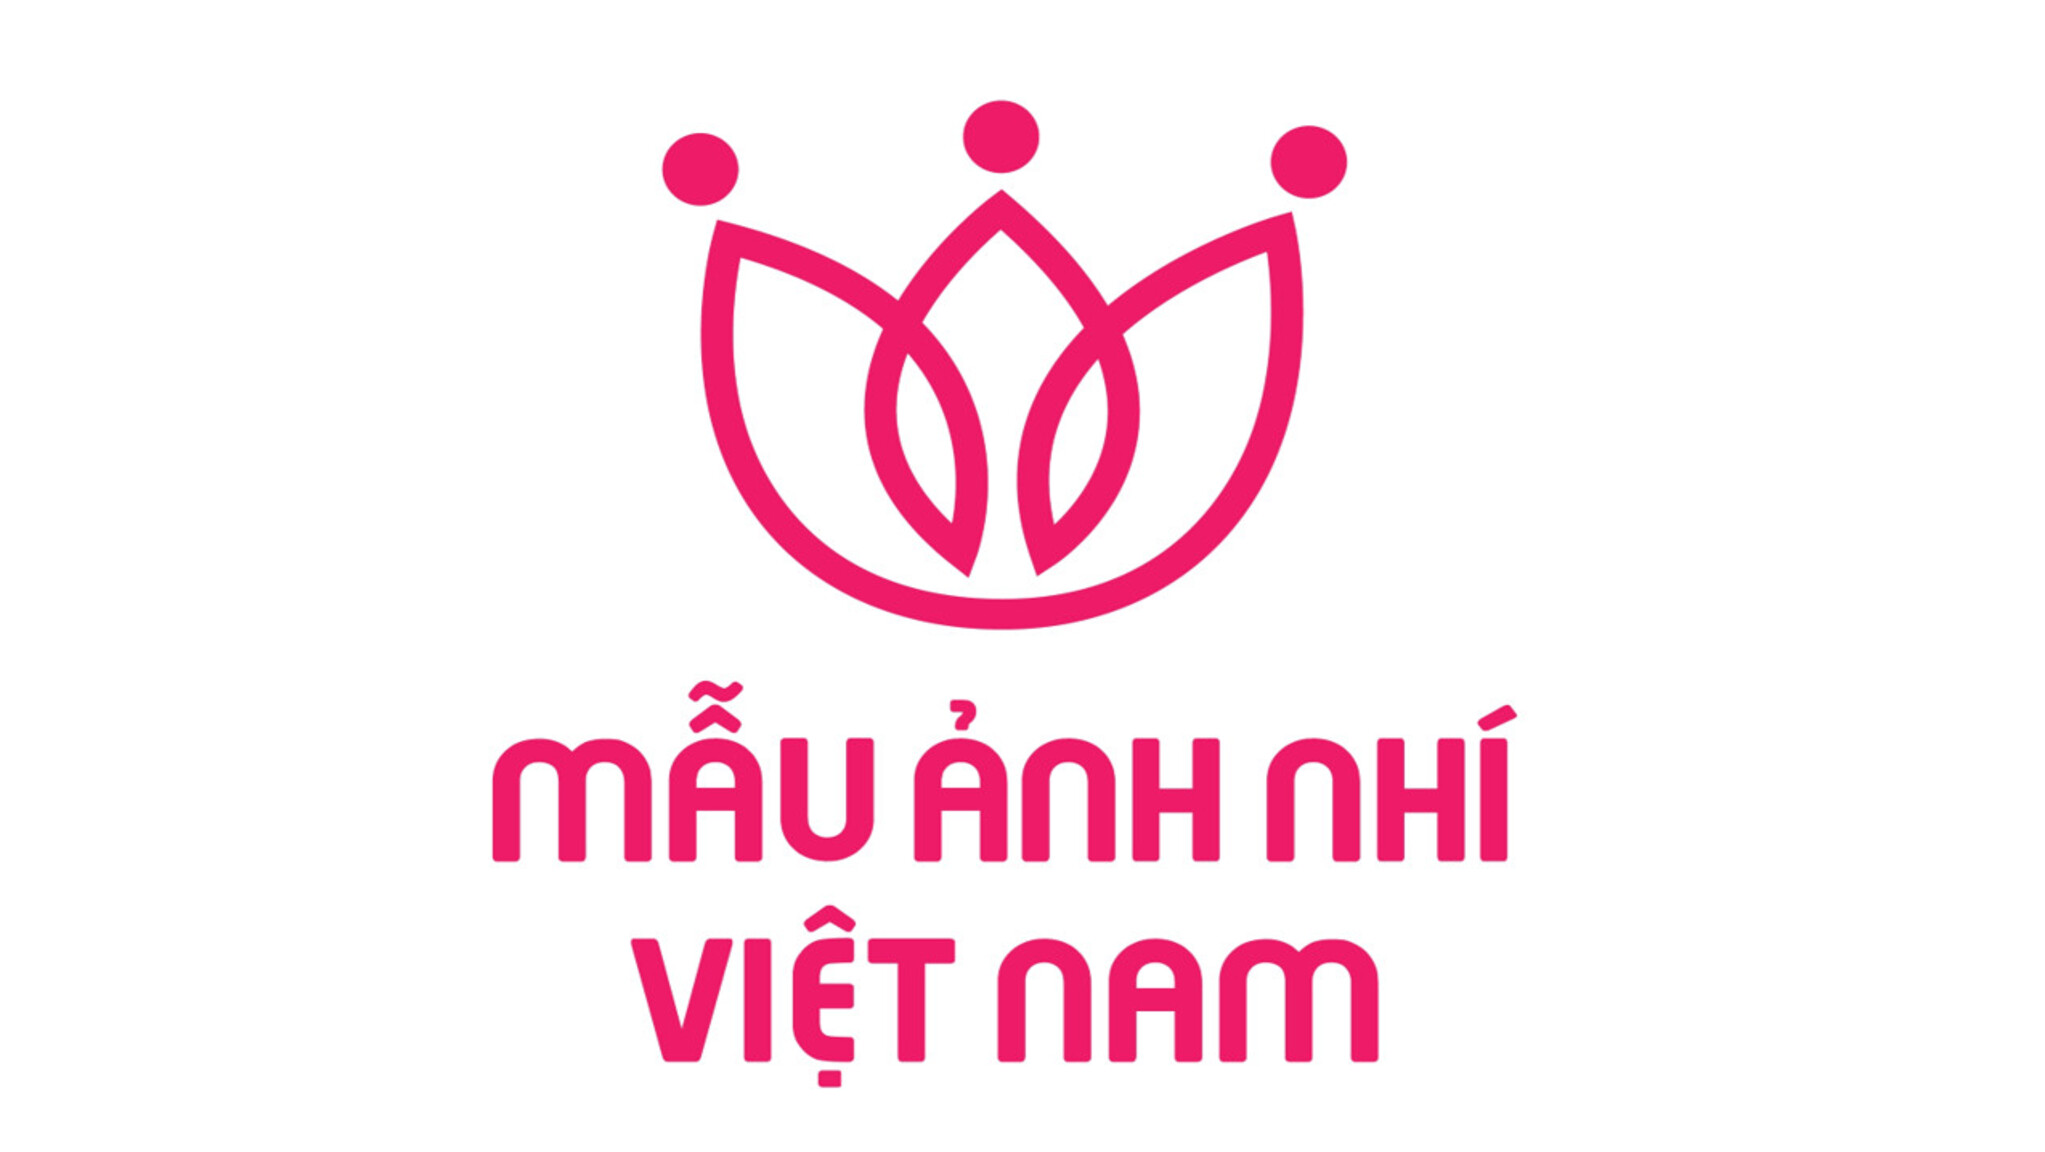 Cuộc Thi Mẫu Ảnh Nhí Việt Nam